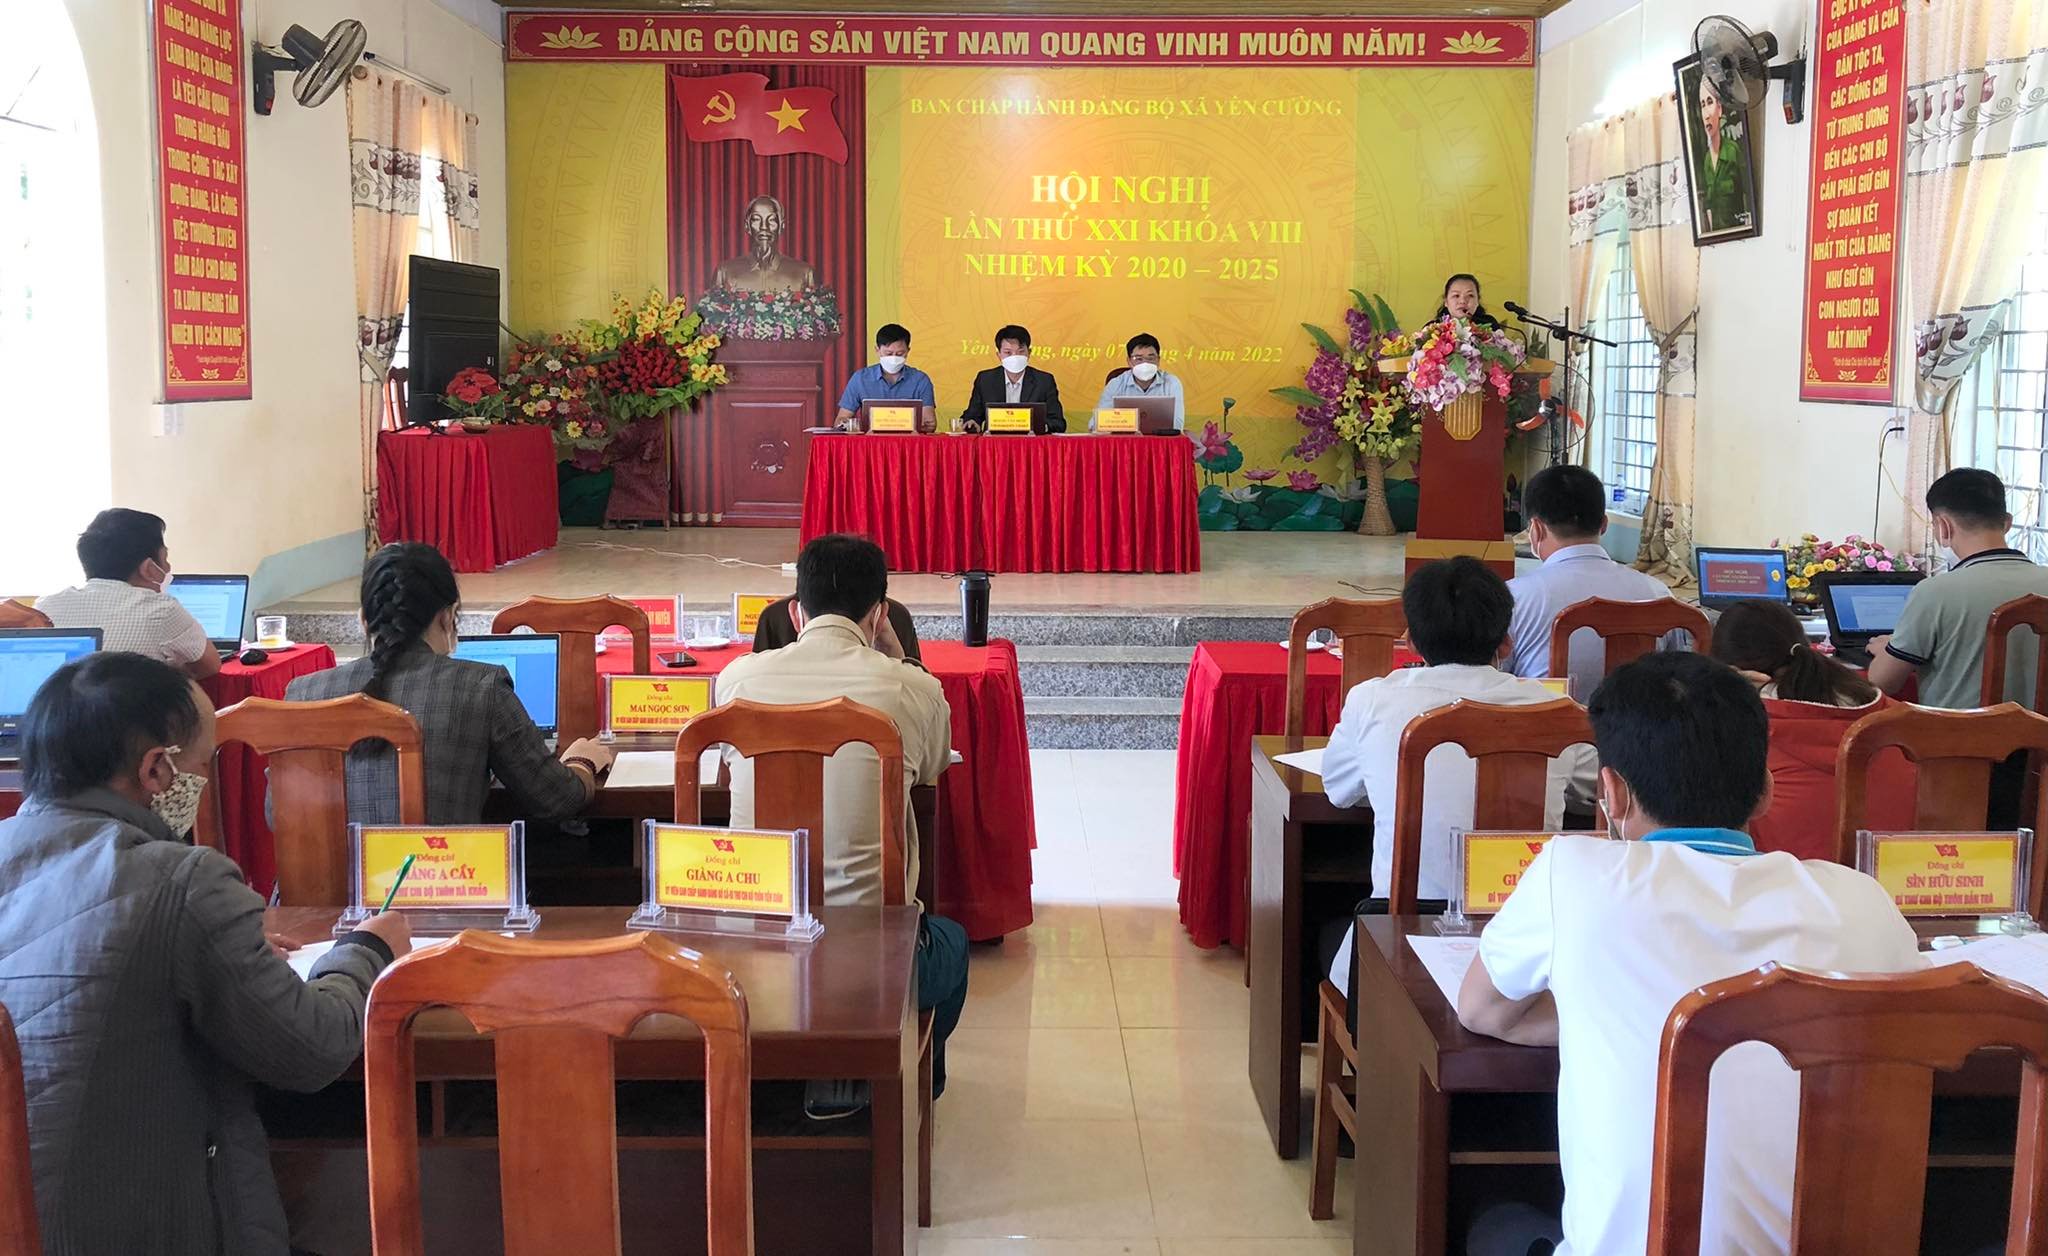 Hội nghị Ban Chấp hành Đảng bộ xã Yên Cường lần thứ XXI khóa VIII, nhiệm kỳ 2020 - 2025